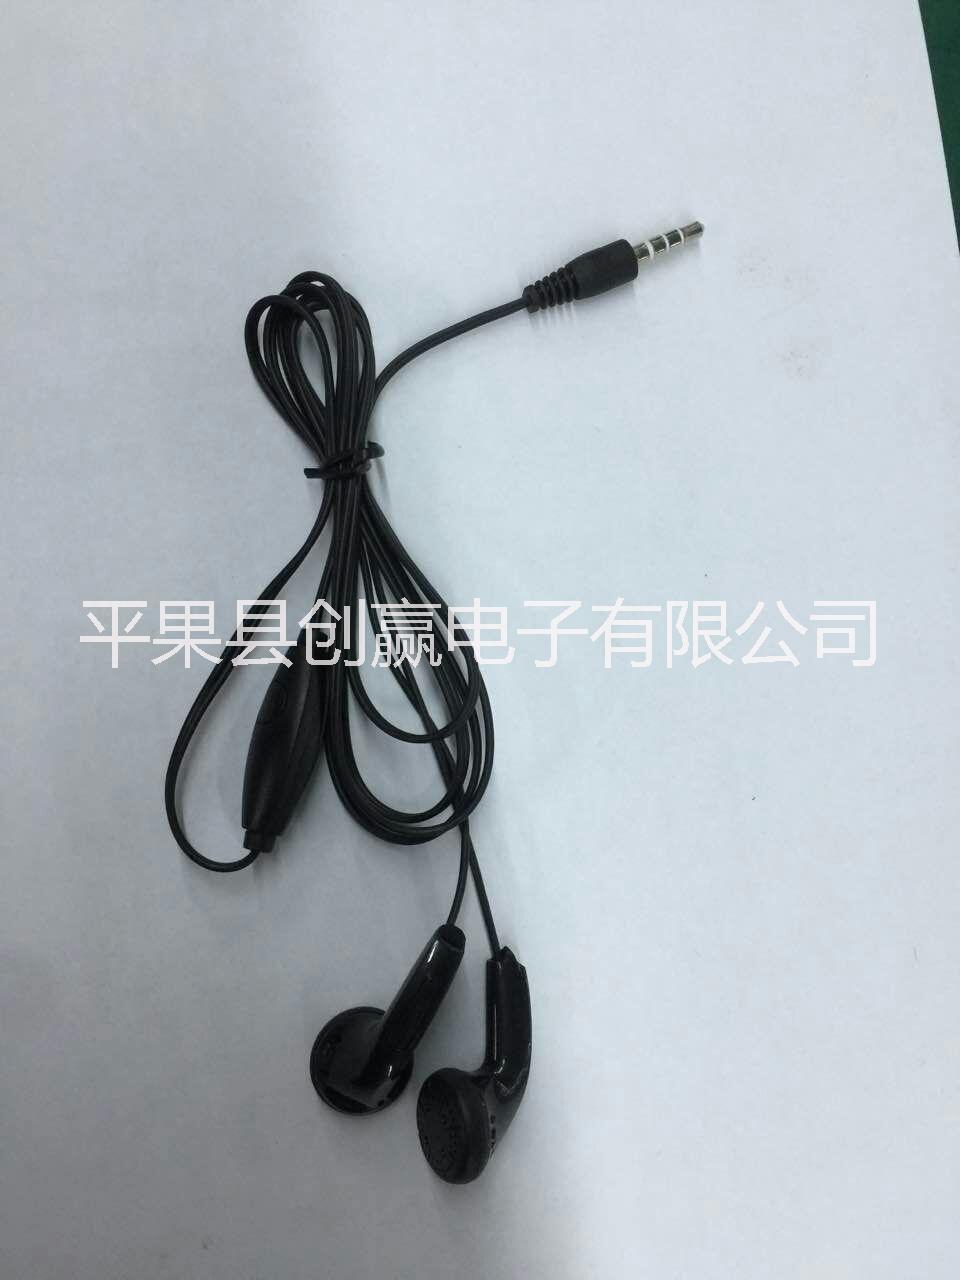 便宜手机耳机线便宜手机耳机线 汕头便宜手机耳机线厂家 深圳外手机线控耳机供应